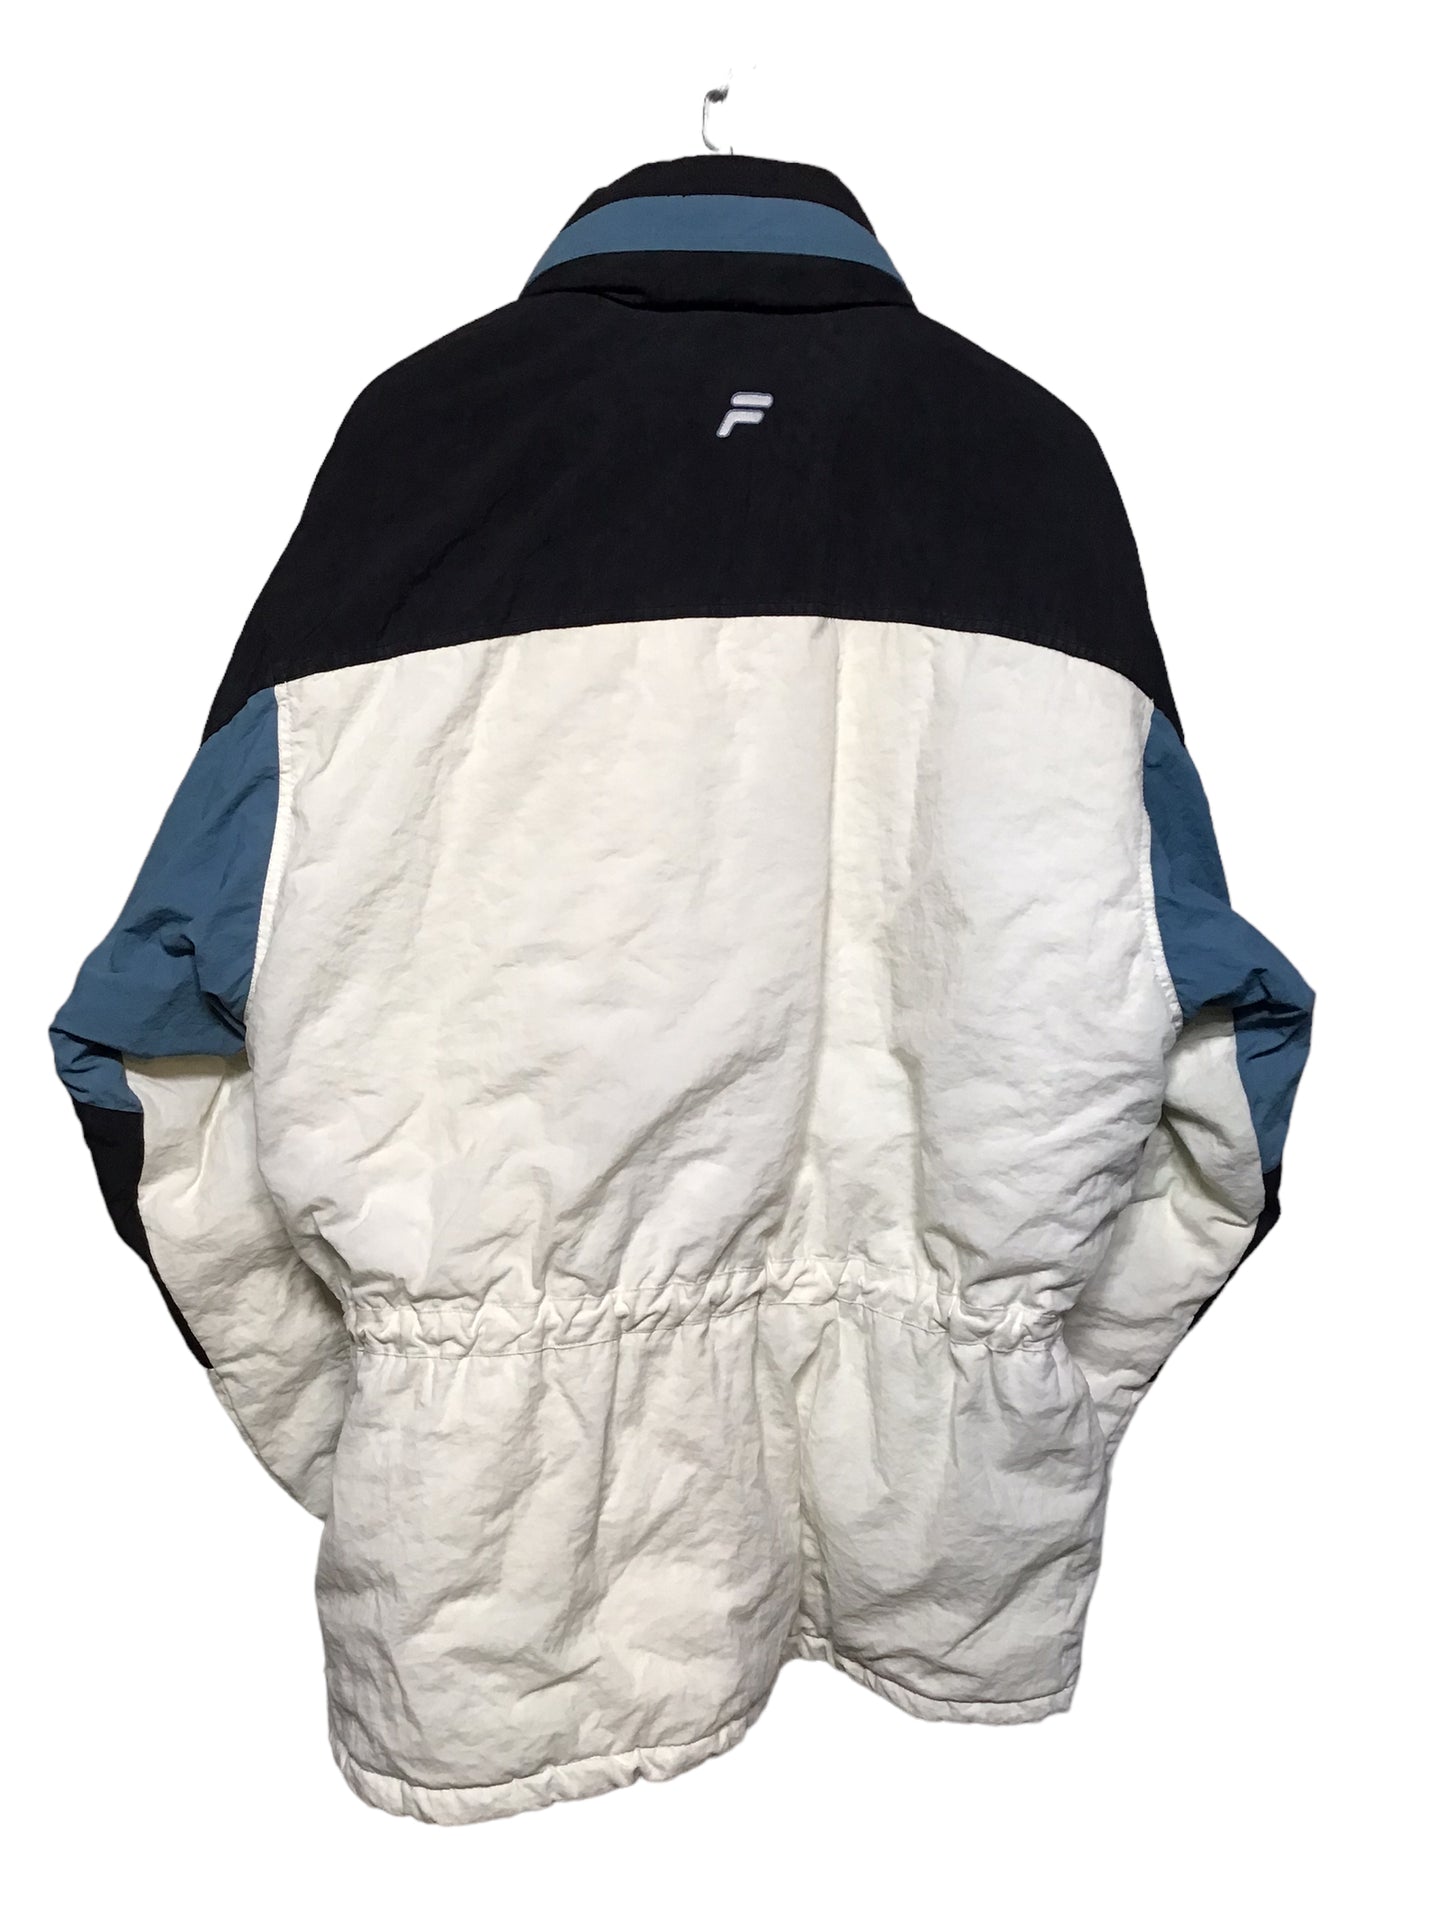 Fila Ski Jacket (Size XL)